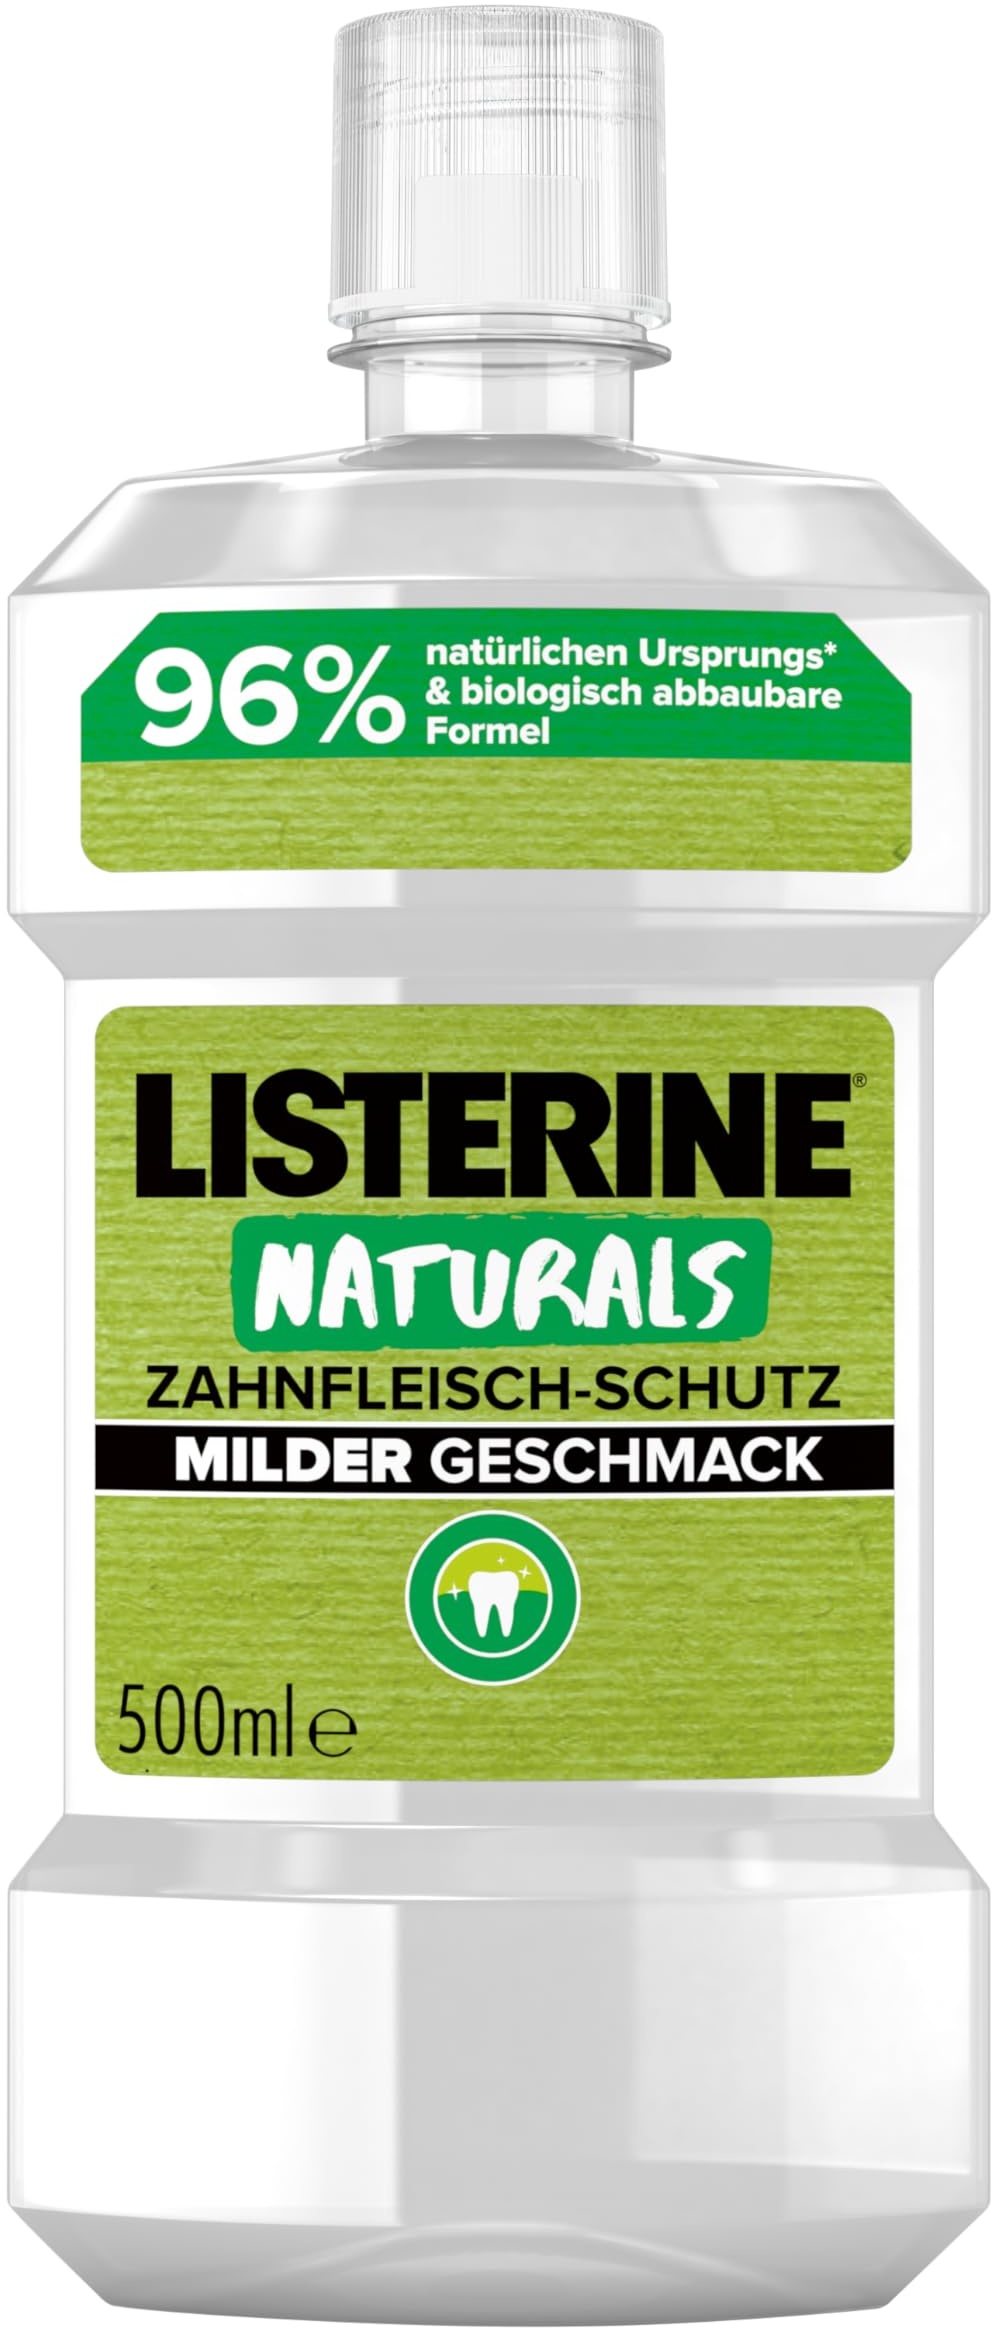 LISTERINE Naturals Zahnfleisch-Schutz (500 ml), biologisch abbaubares Mundwasser mit mildem Geschmack, antibakterielle Mundspülung ohne Alkohol für gesundes Zahnfleisch